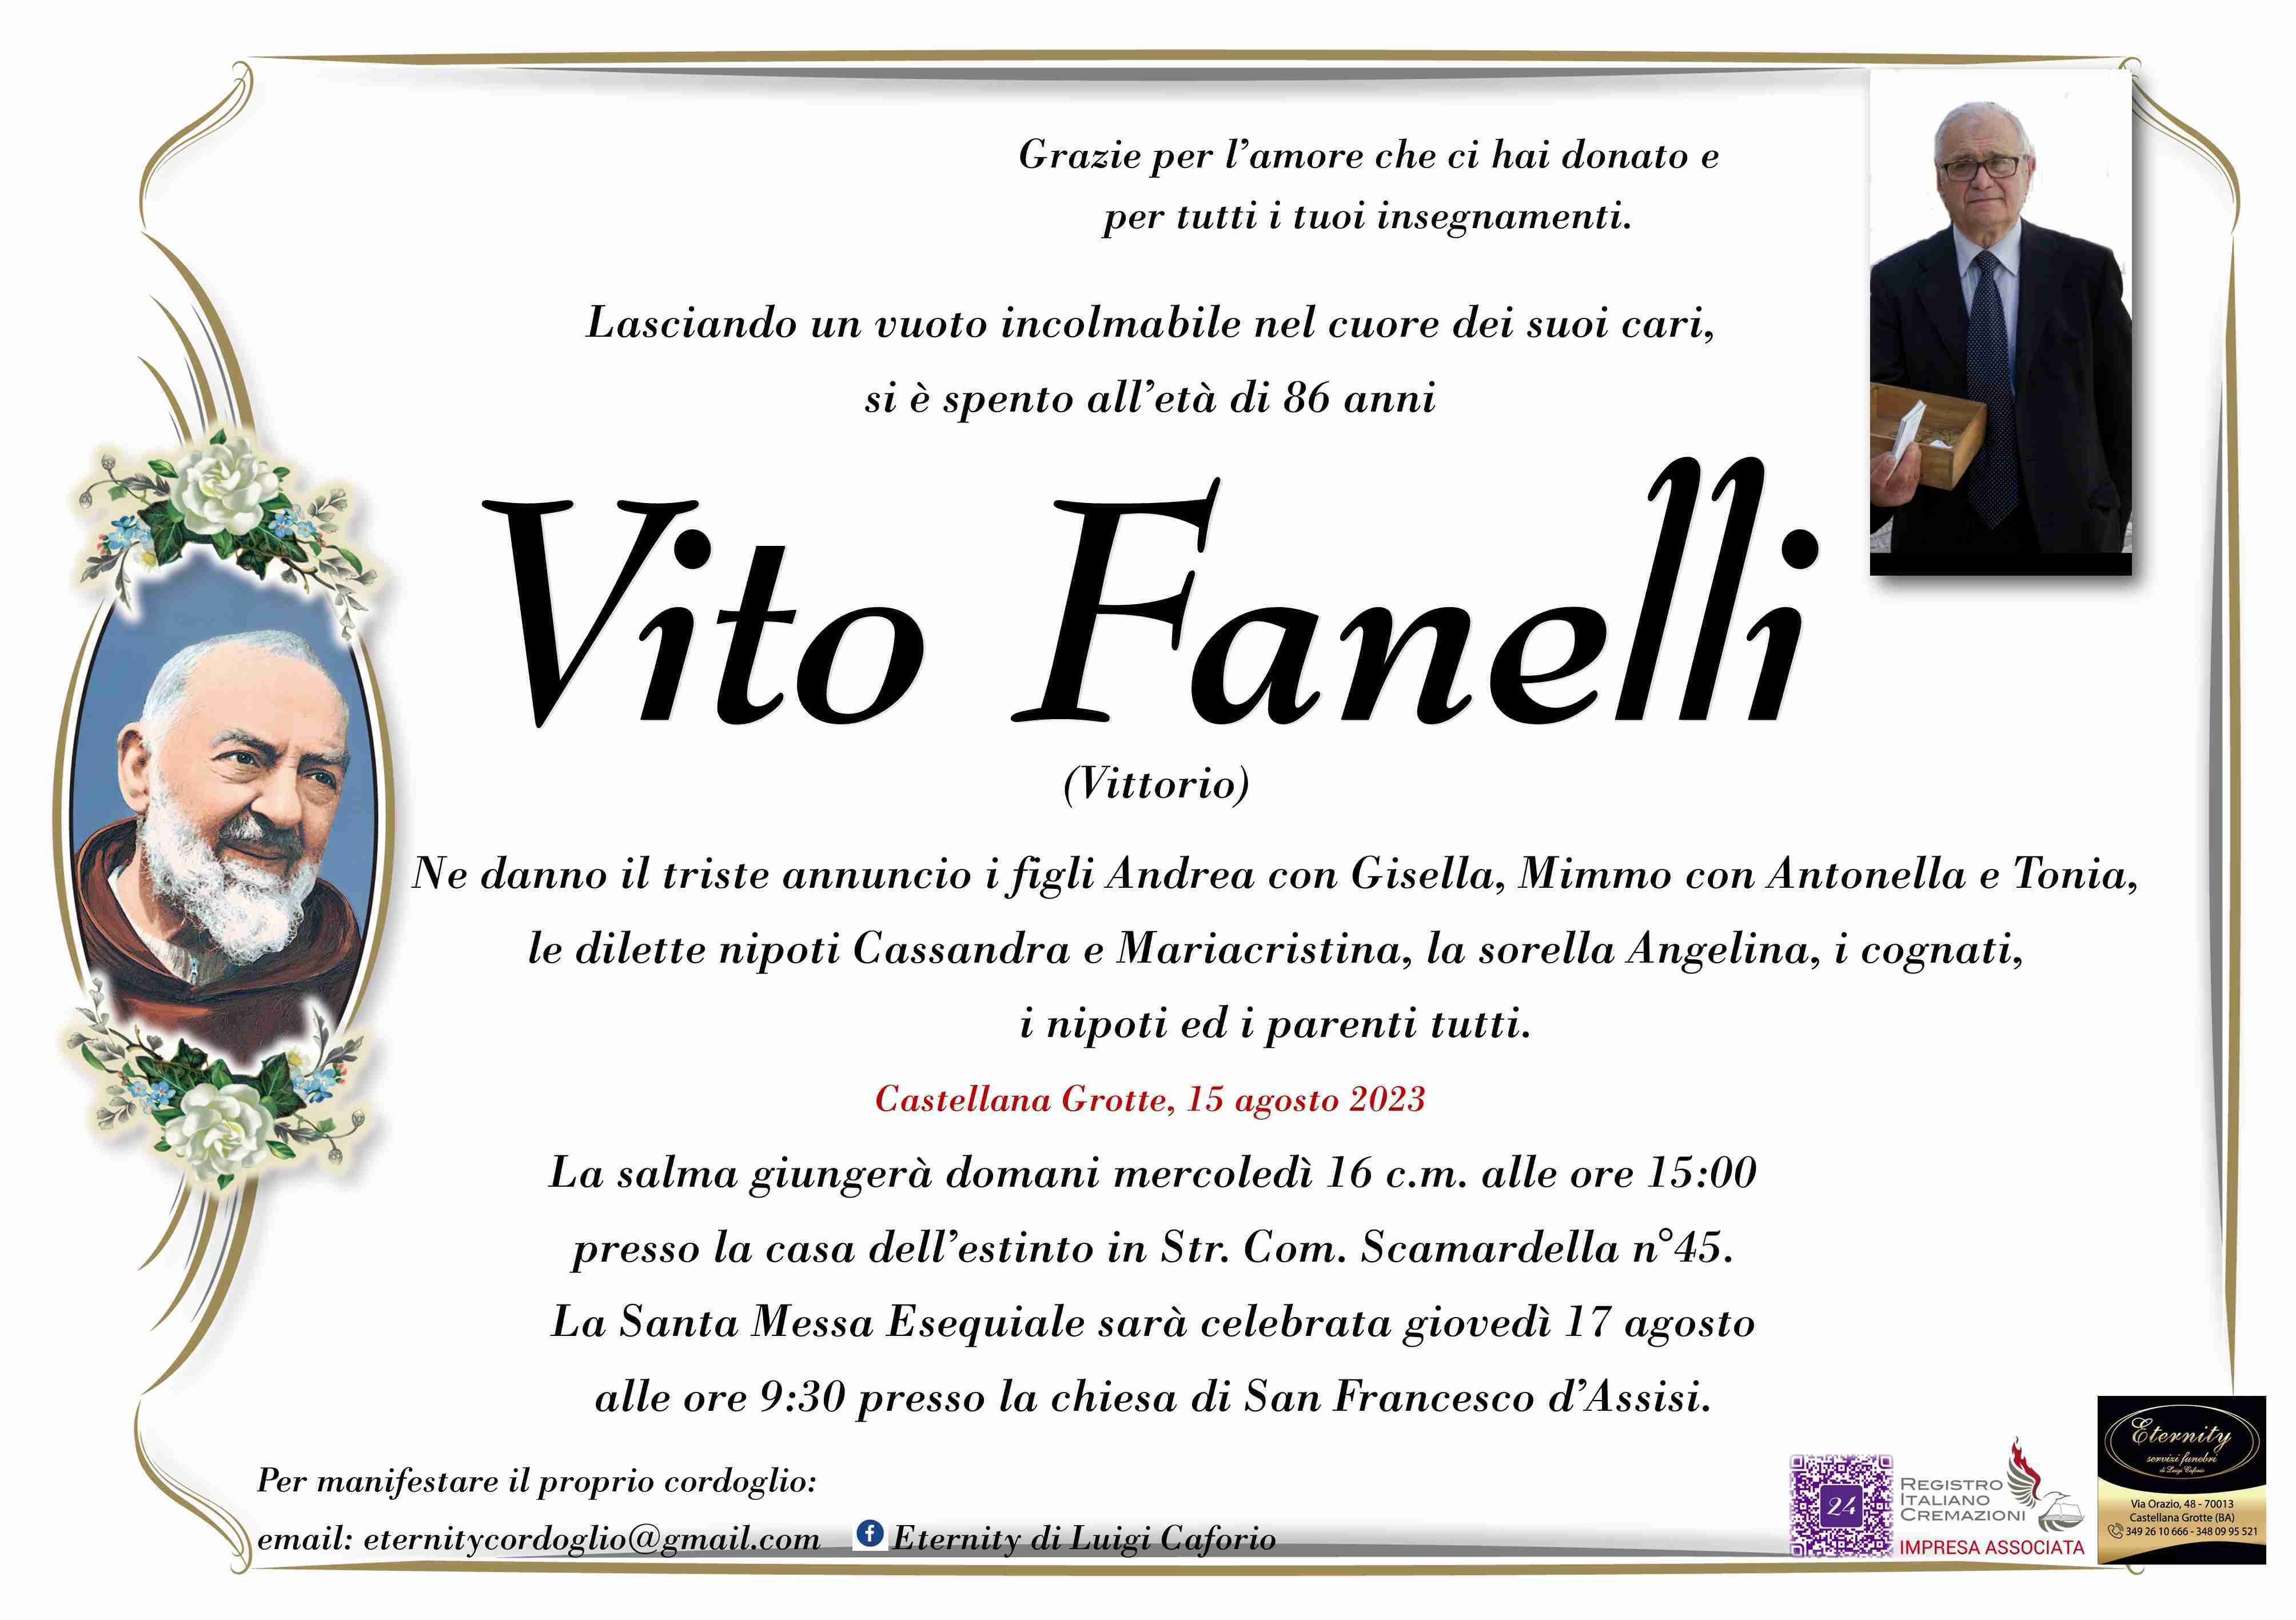 Vito Fanelli (Vittorio)